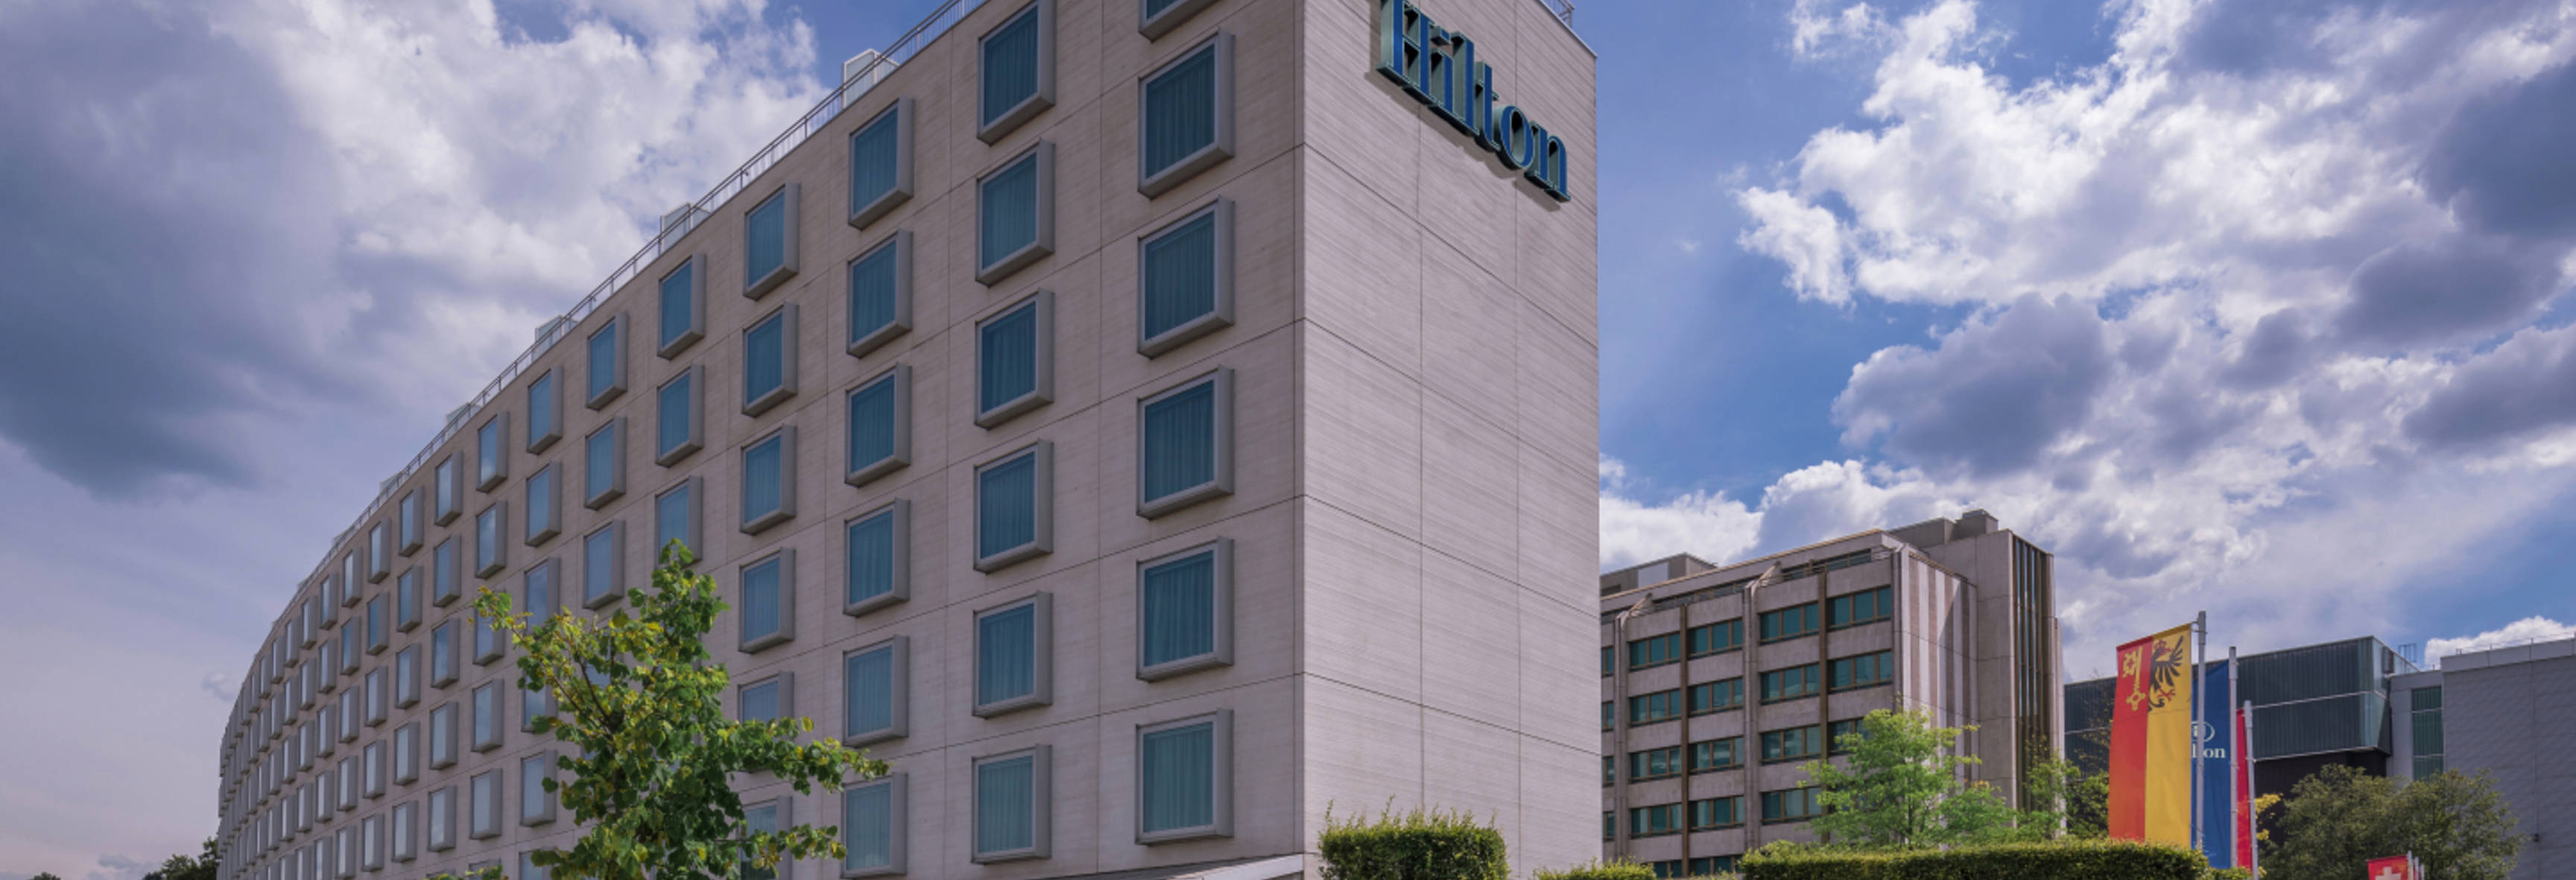 Hilton Geneva Hotel & Conference Centre, l'hôtel du CHI de Genève